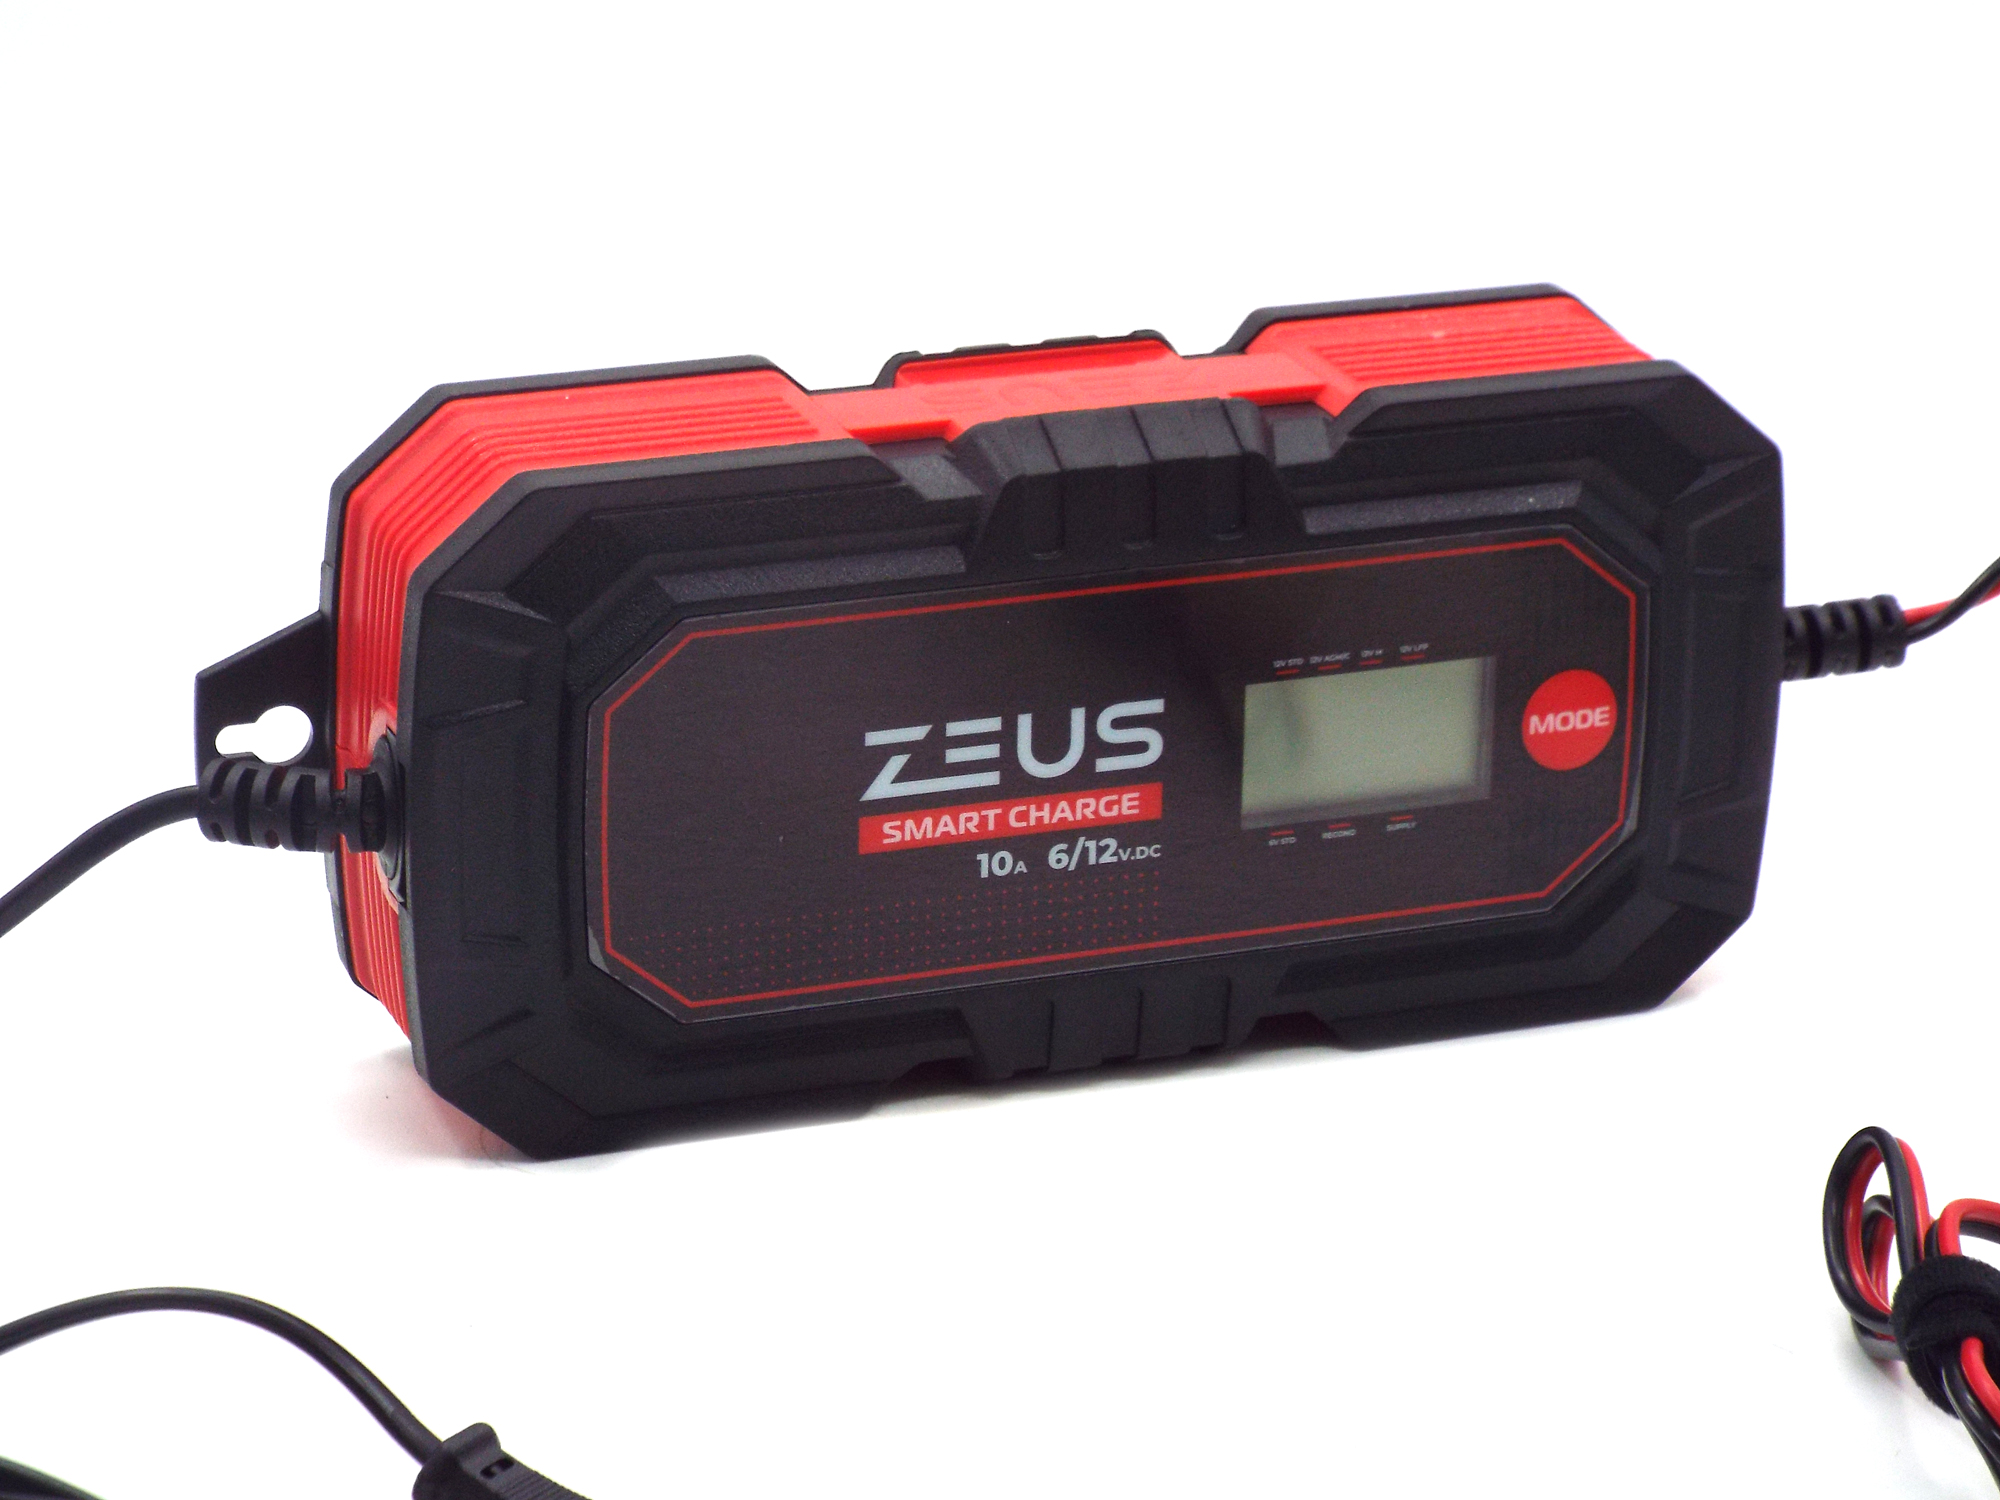 Зарядное устройство для автомобильного и мото аккумуляторов ZEUS SMART CHARGE 10А (12В/6В)